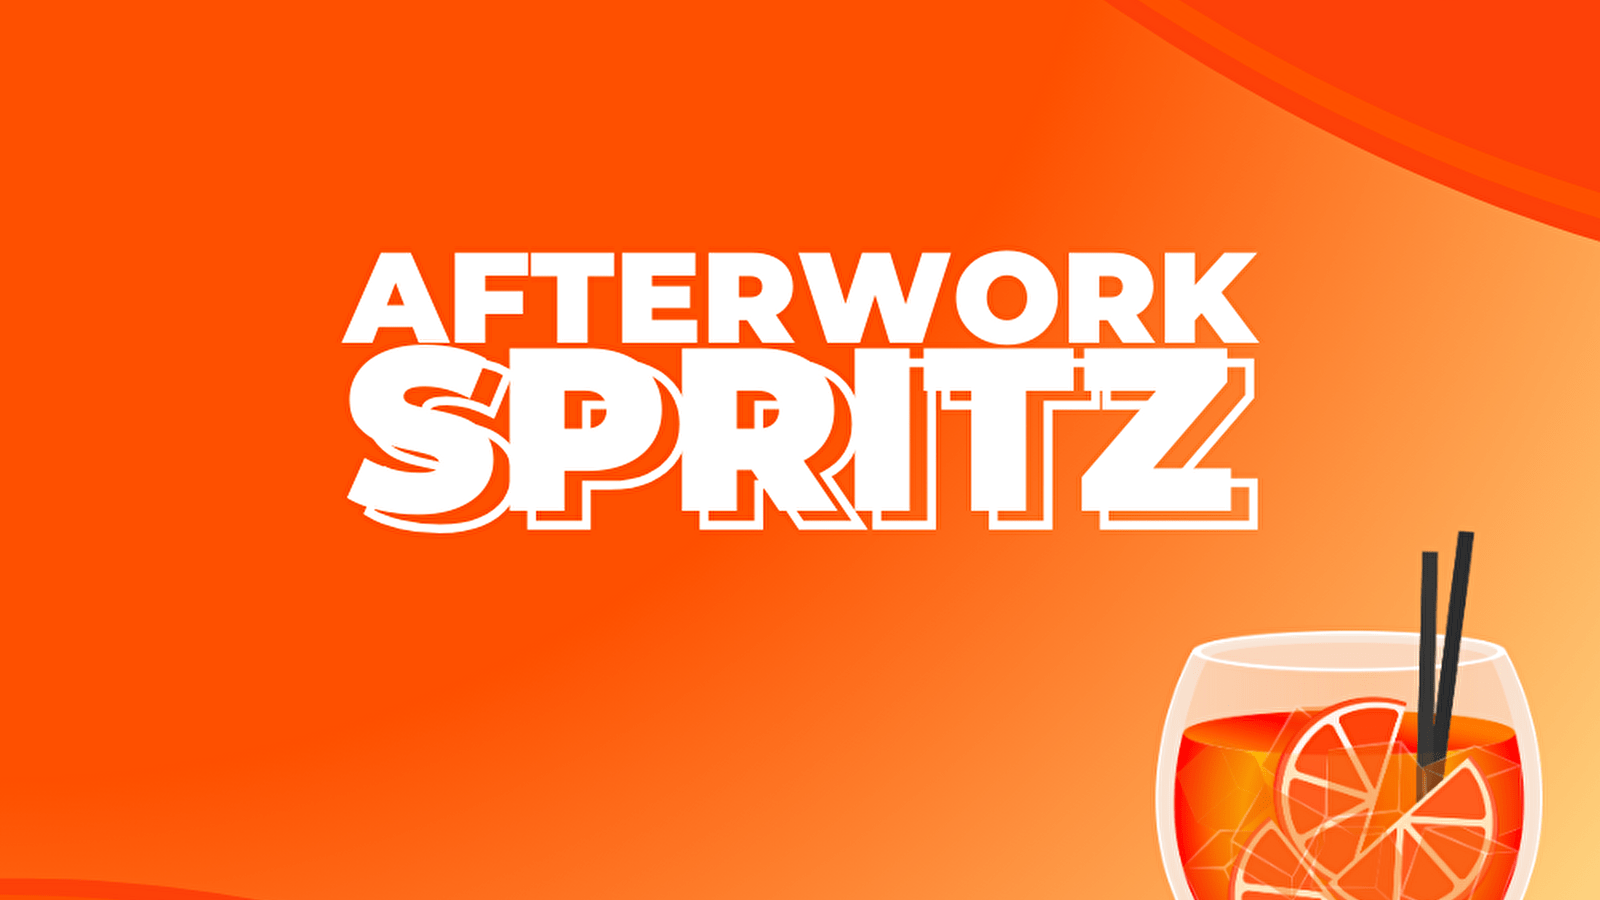 Afterwork Spritz